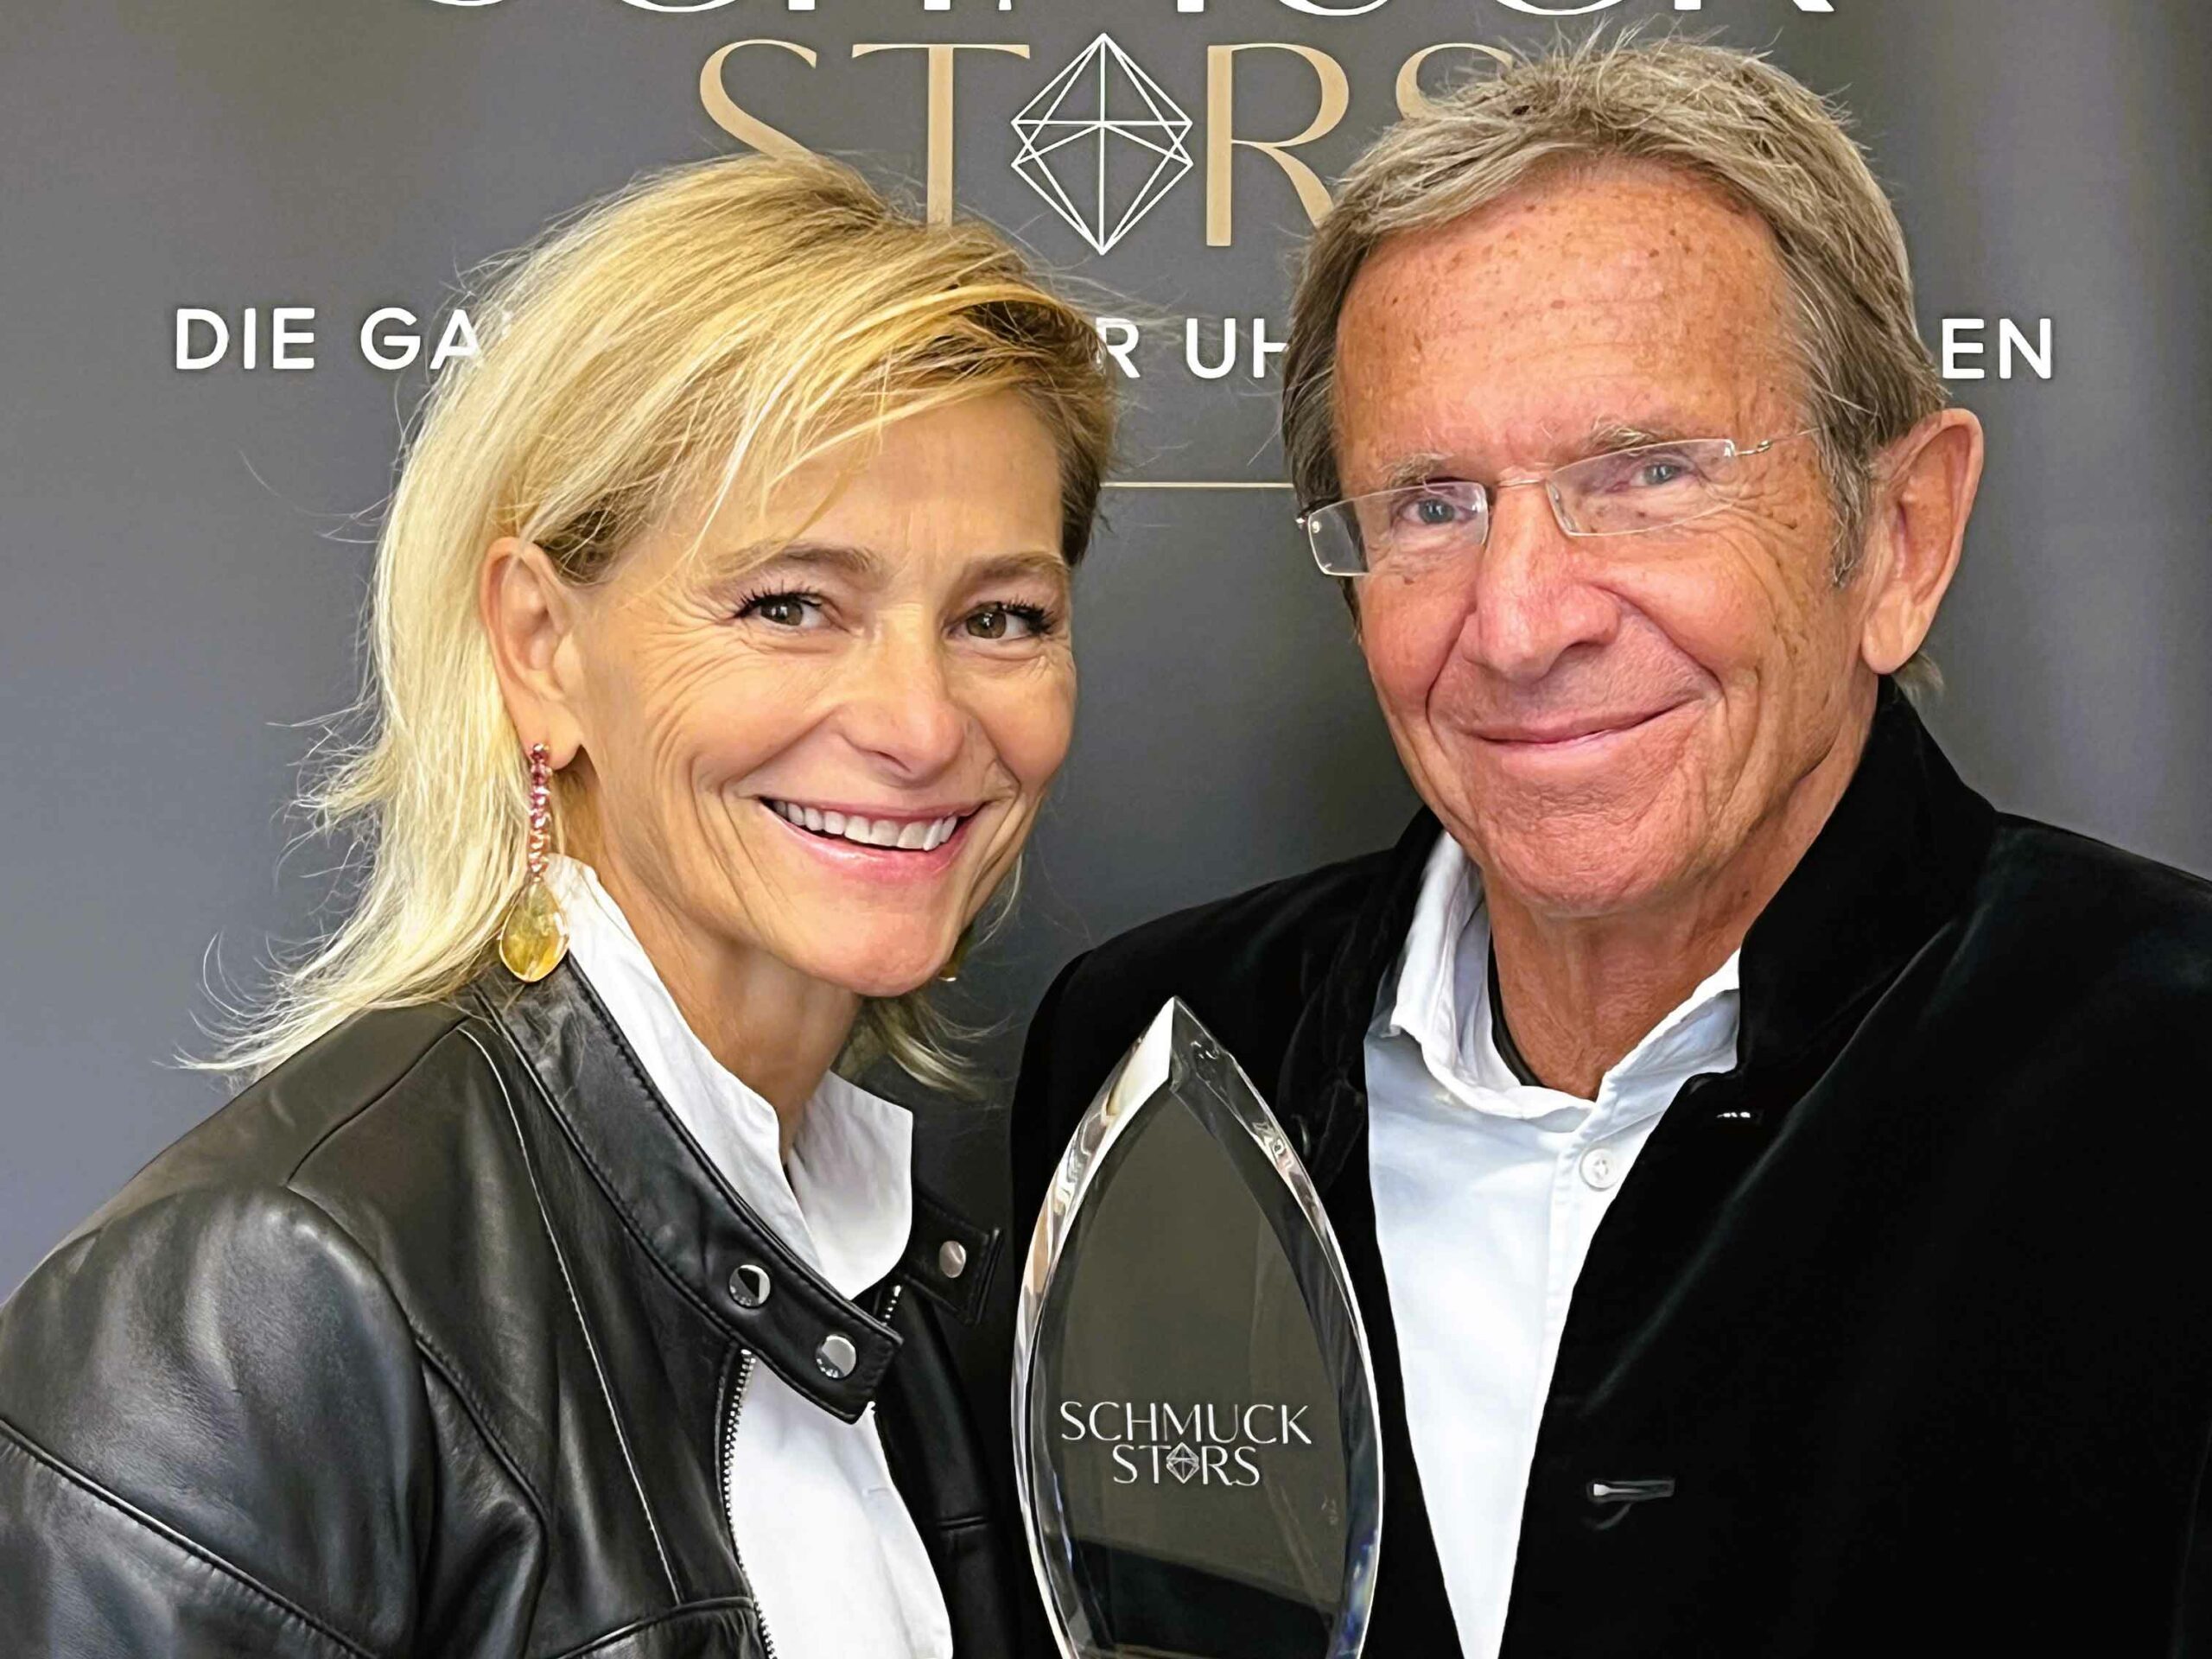 Der Juwelier SCHULLIN sich über den Sieg in der Kategorie „Konzept des Jahres“ bei den Schmuckstars Awards 2022 mit der Kollektion „Rainbow“.